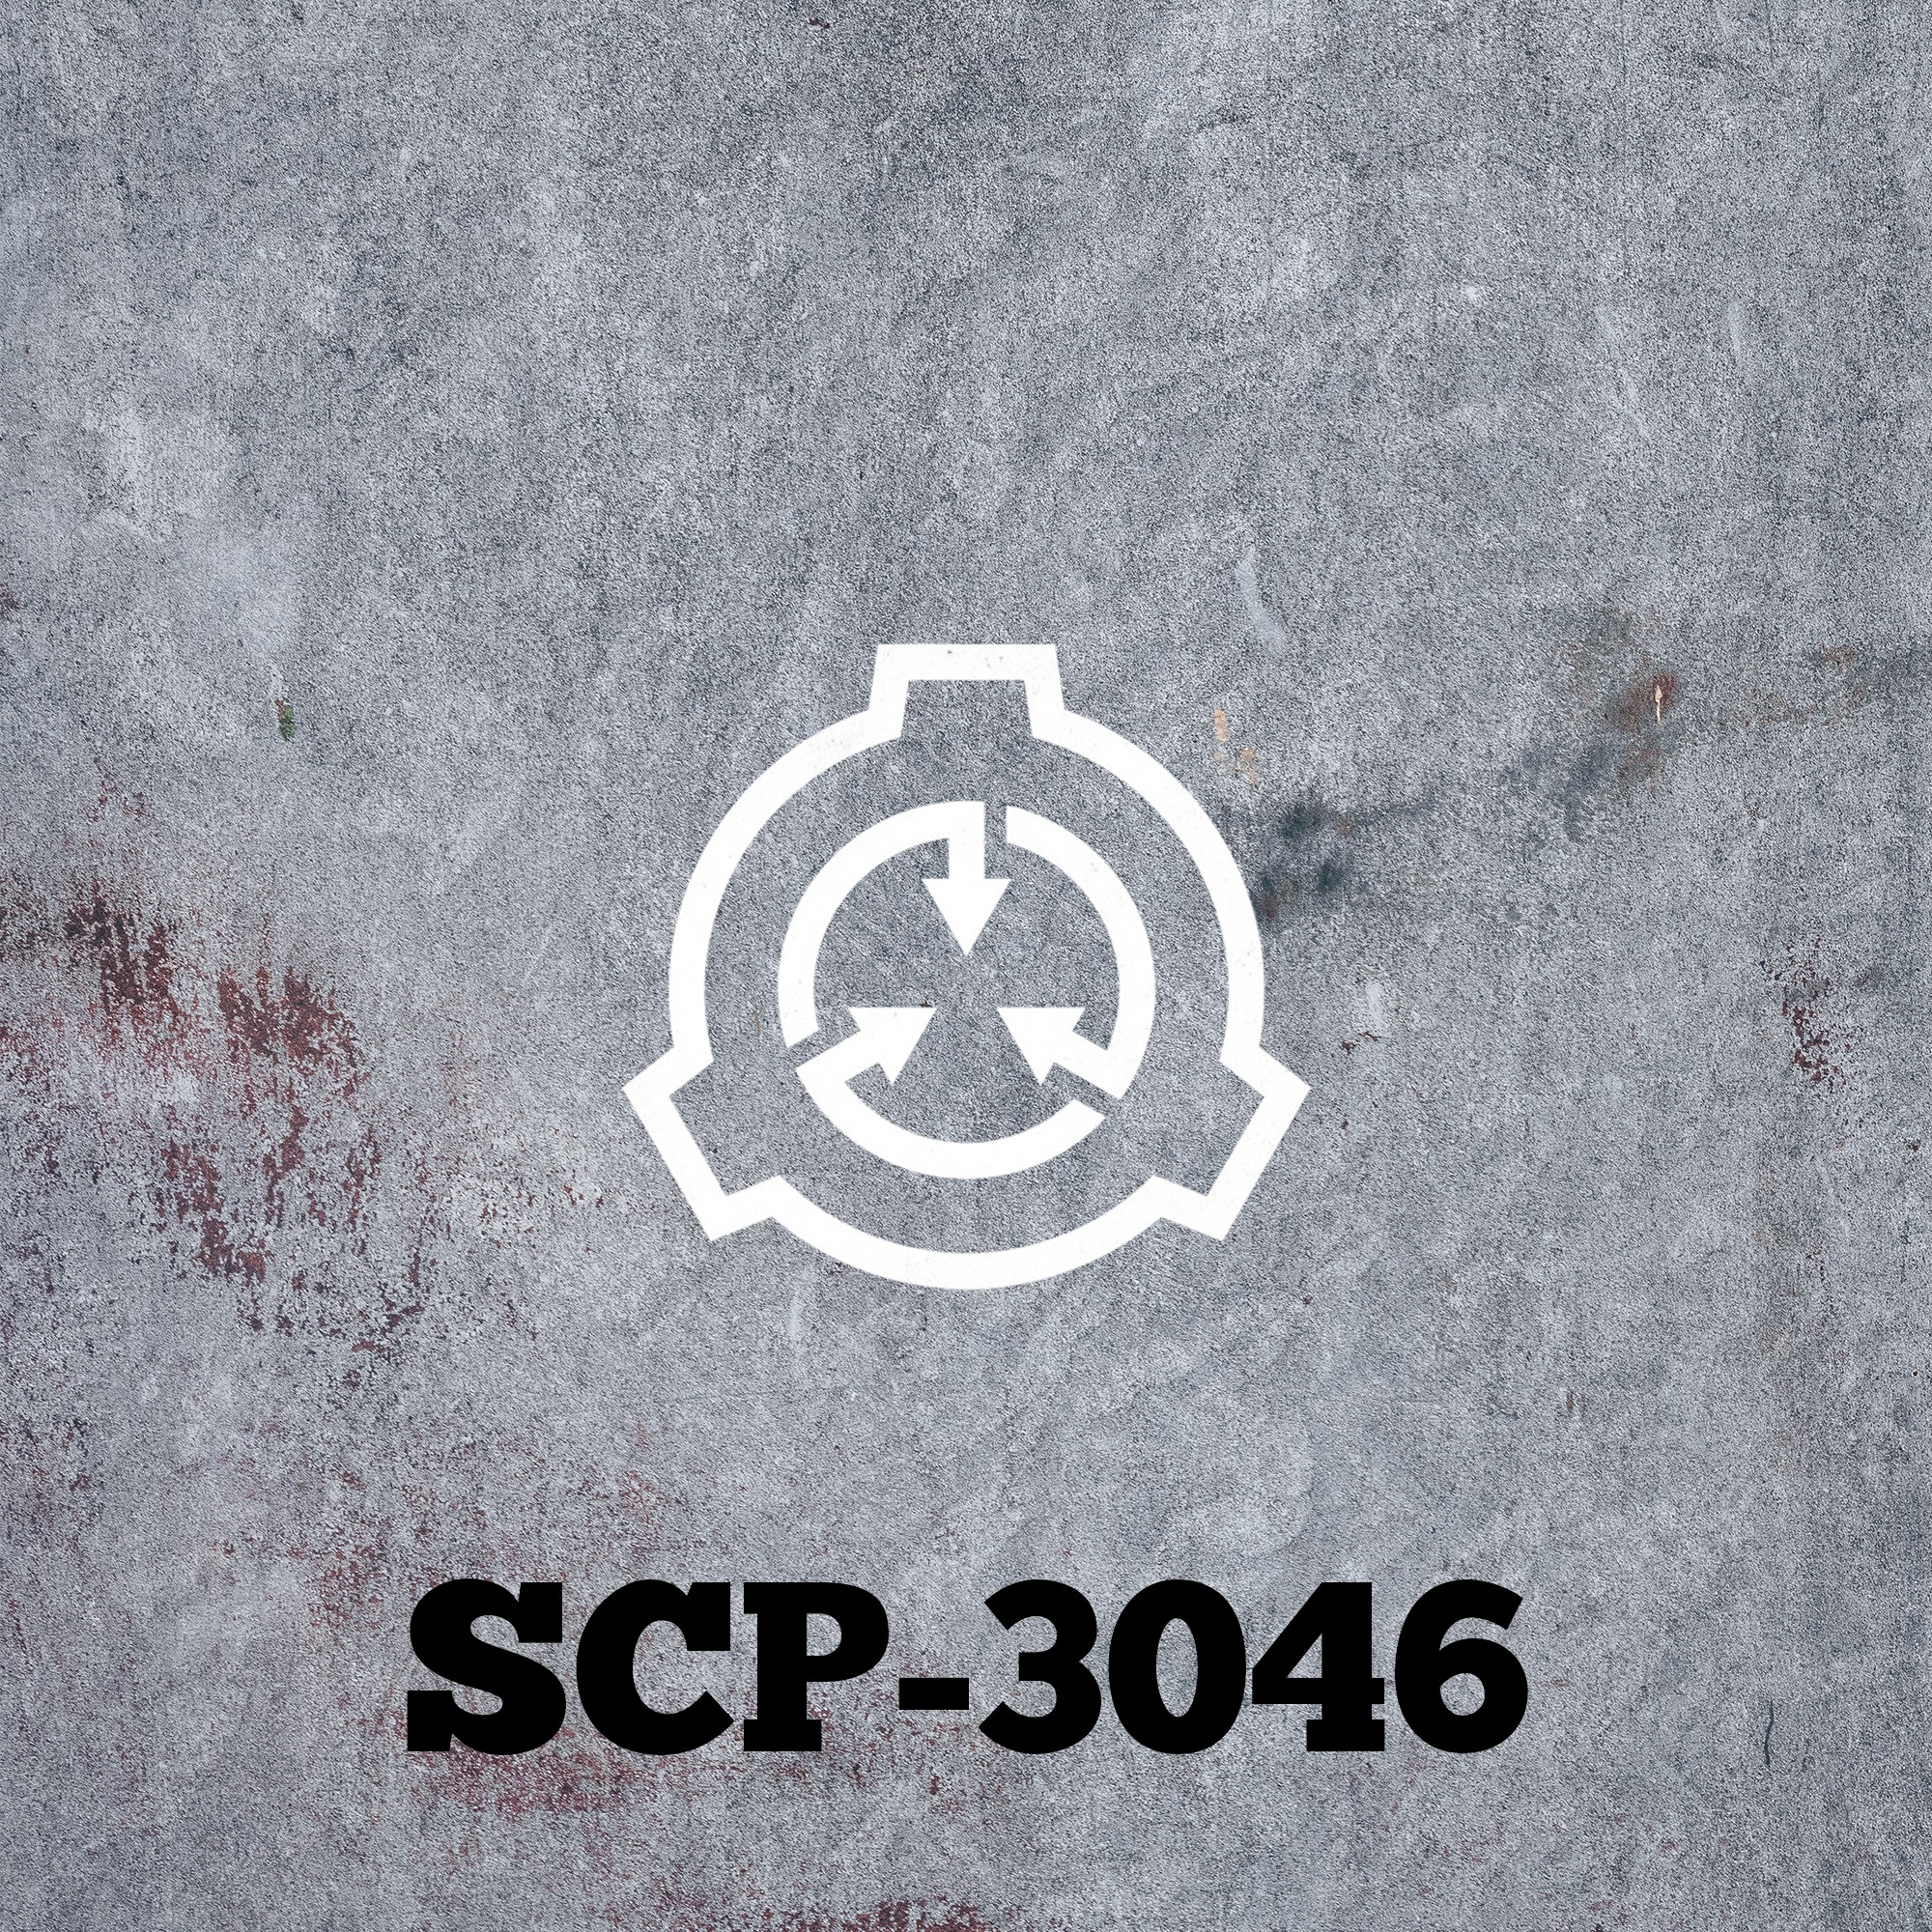 SCP-3046: Model TH-223